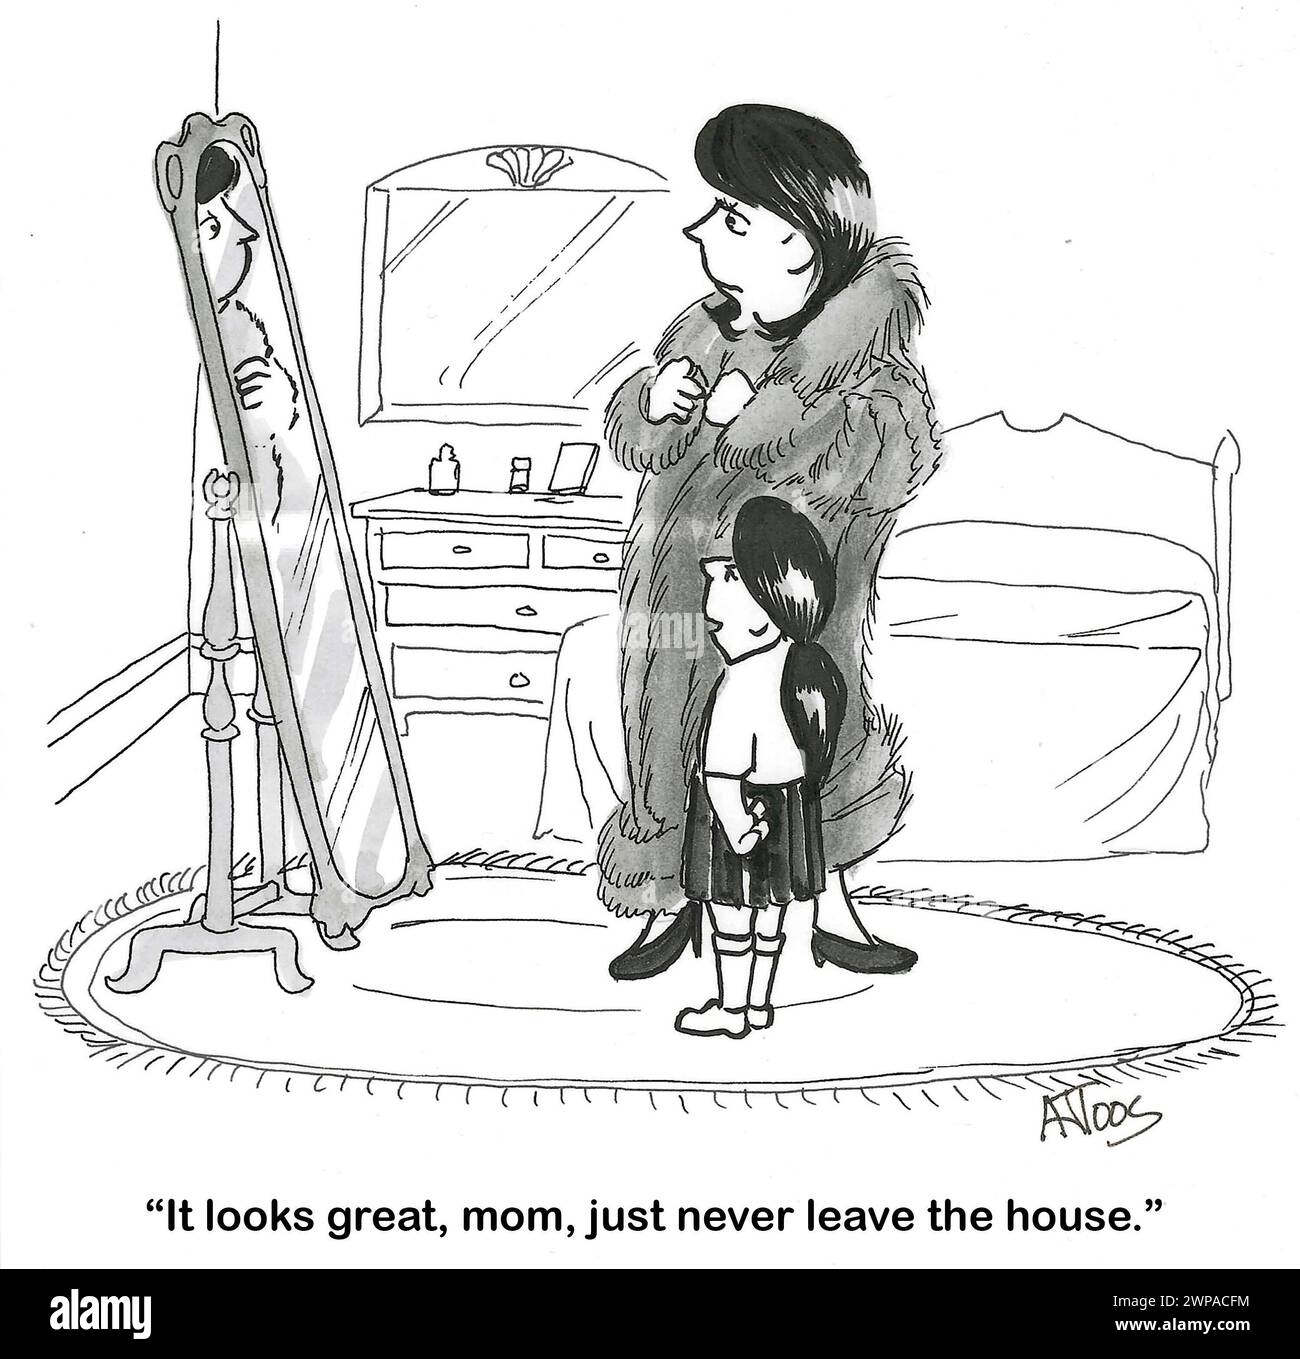 Dessin animé BW sur une femme portant un vrai manteau de fourrure - controversé. Sa fille suggère de "rester juste dans la maison". Banque D'Images